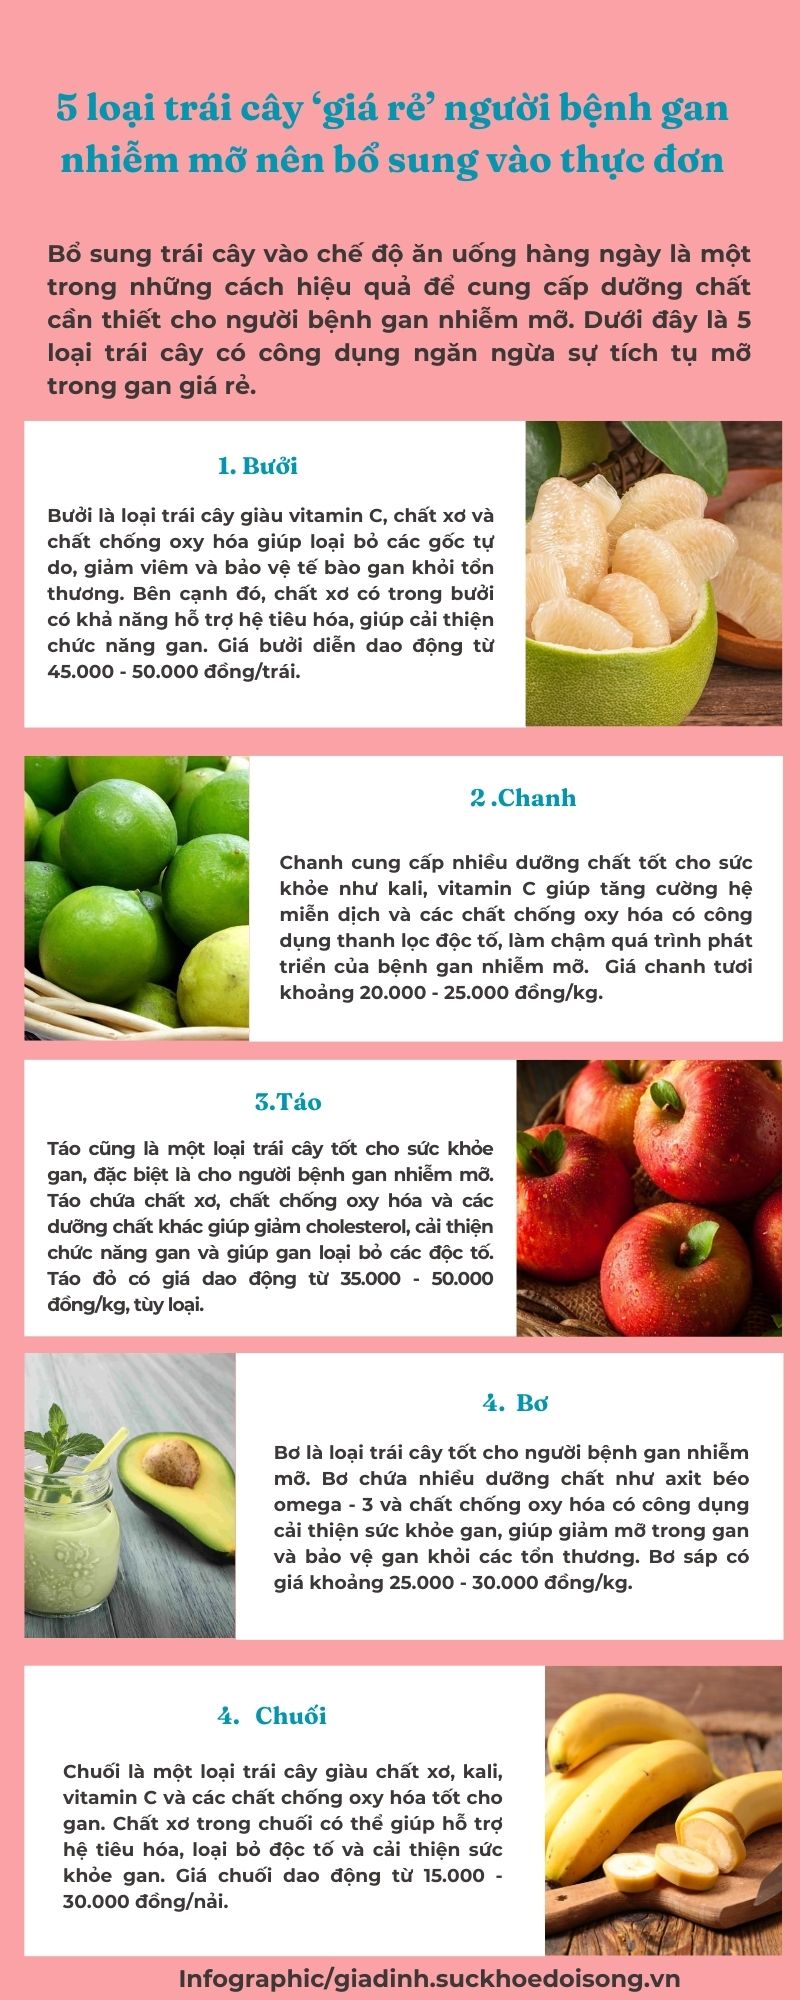 5 loại trái cây giá rẻ người bệnh gan nhiễm mỡ nên bổ sung vào thực đơn- Ảnh 1.